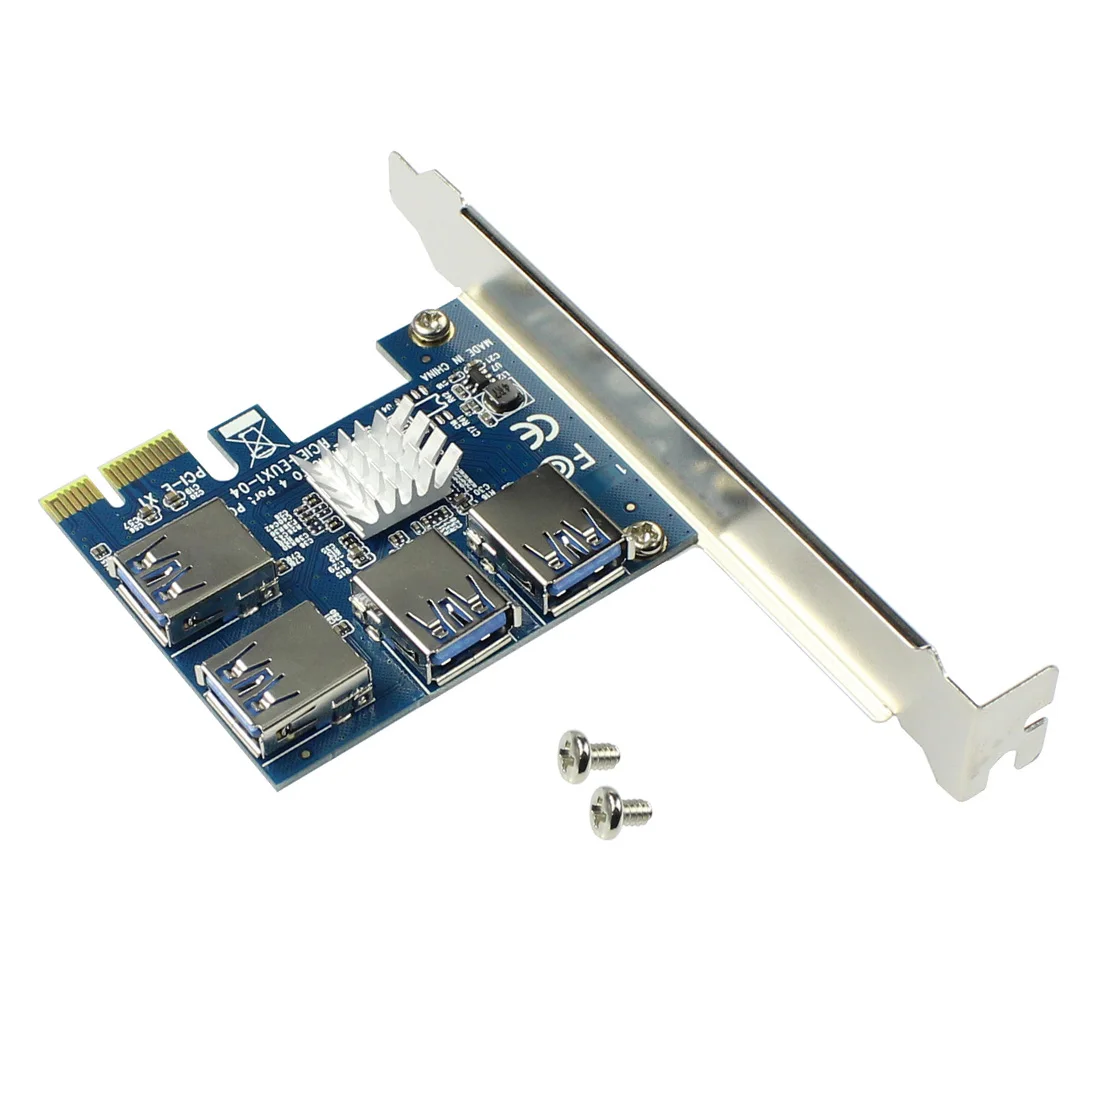 PCIE PCI-E PCI Express Странично Карта от 1x до 16x от 1 до 4 конектори USB 3.0 Множител Hub Адаптер 0